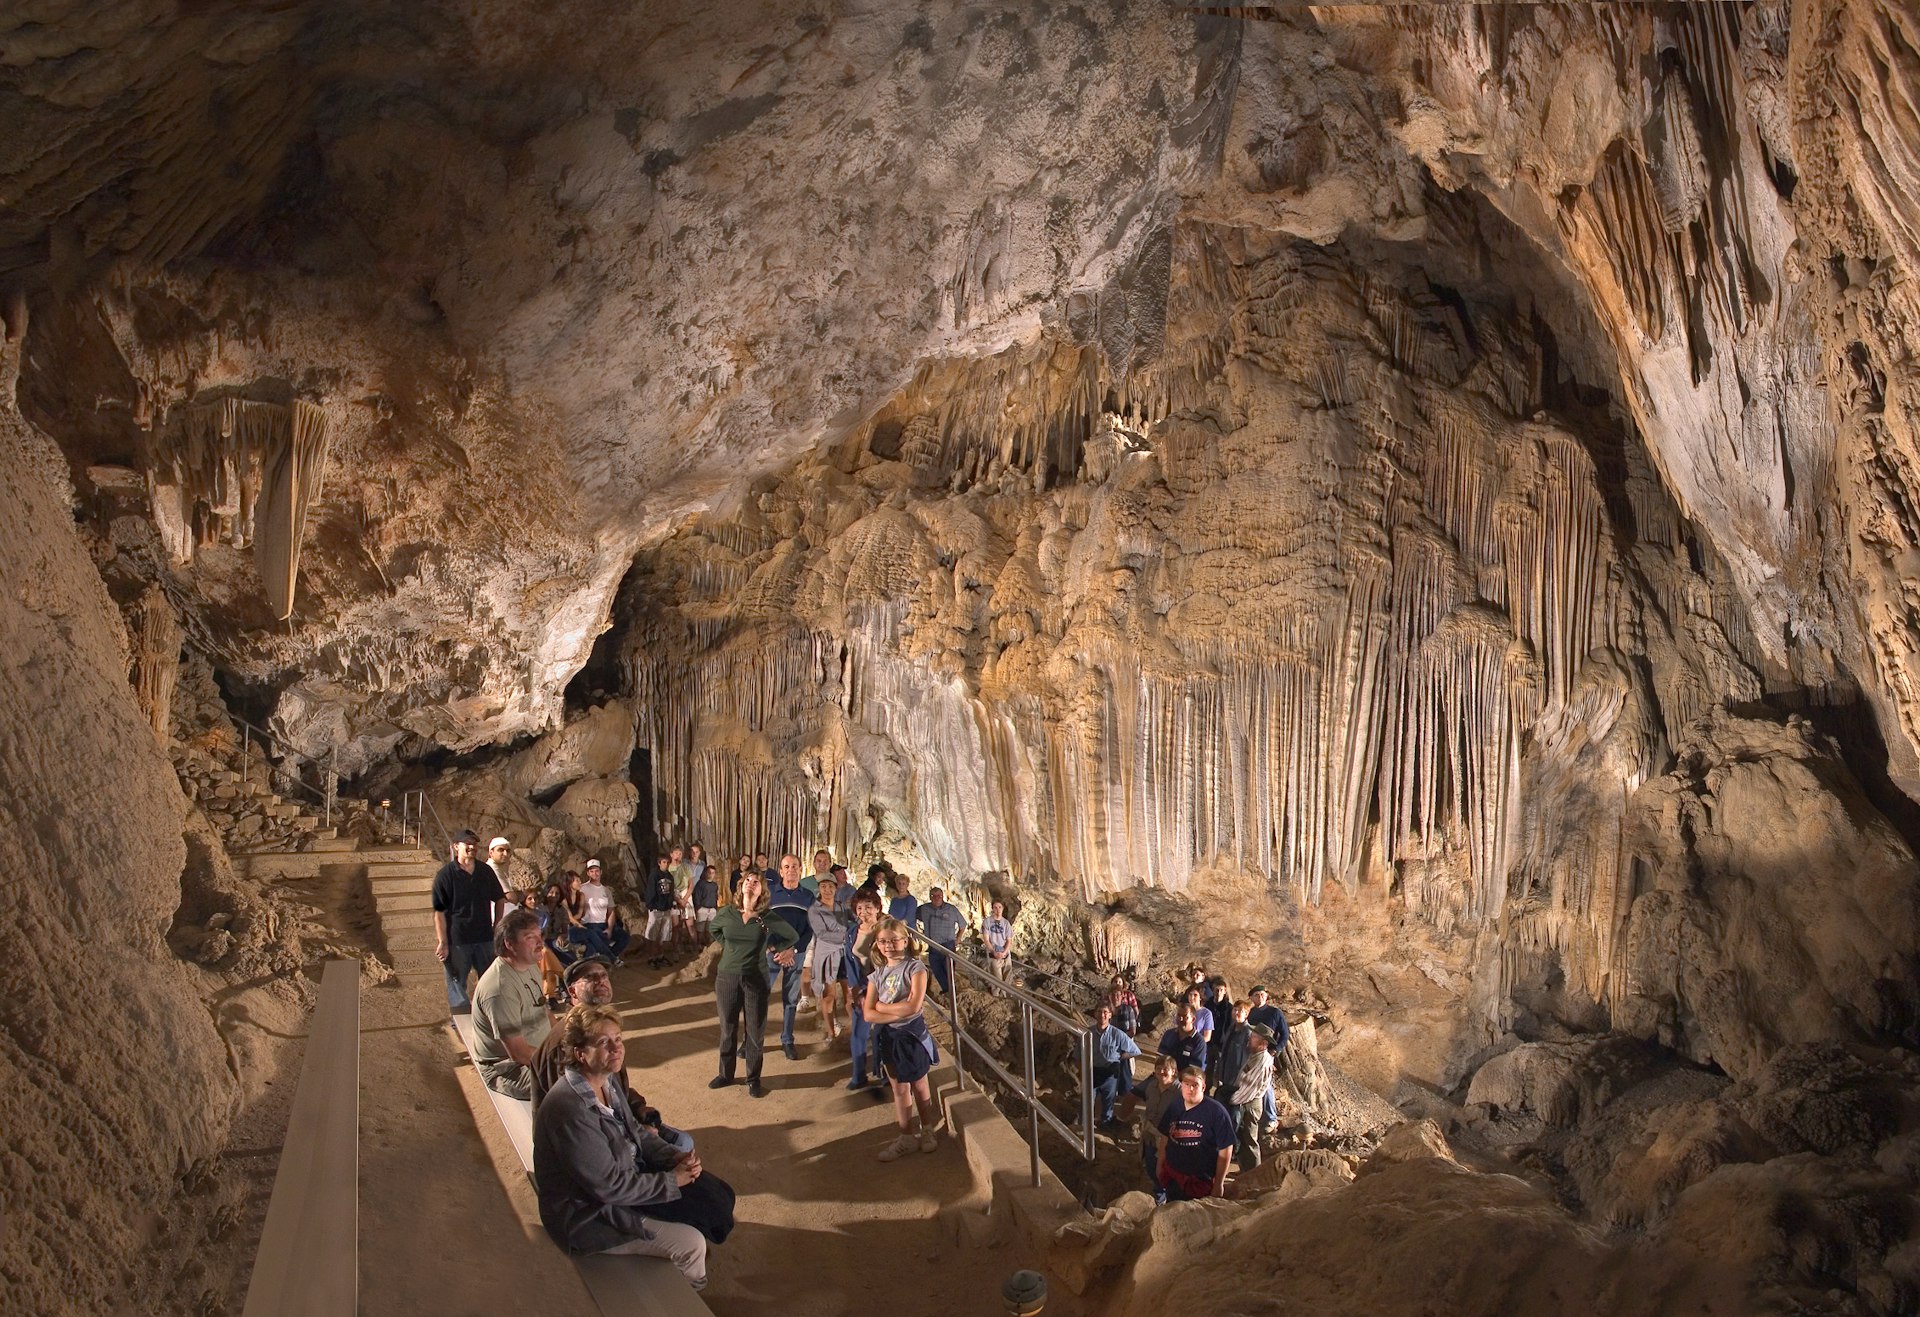 Visitors at Lake Shasta Caverns National Natural Landmark